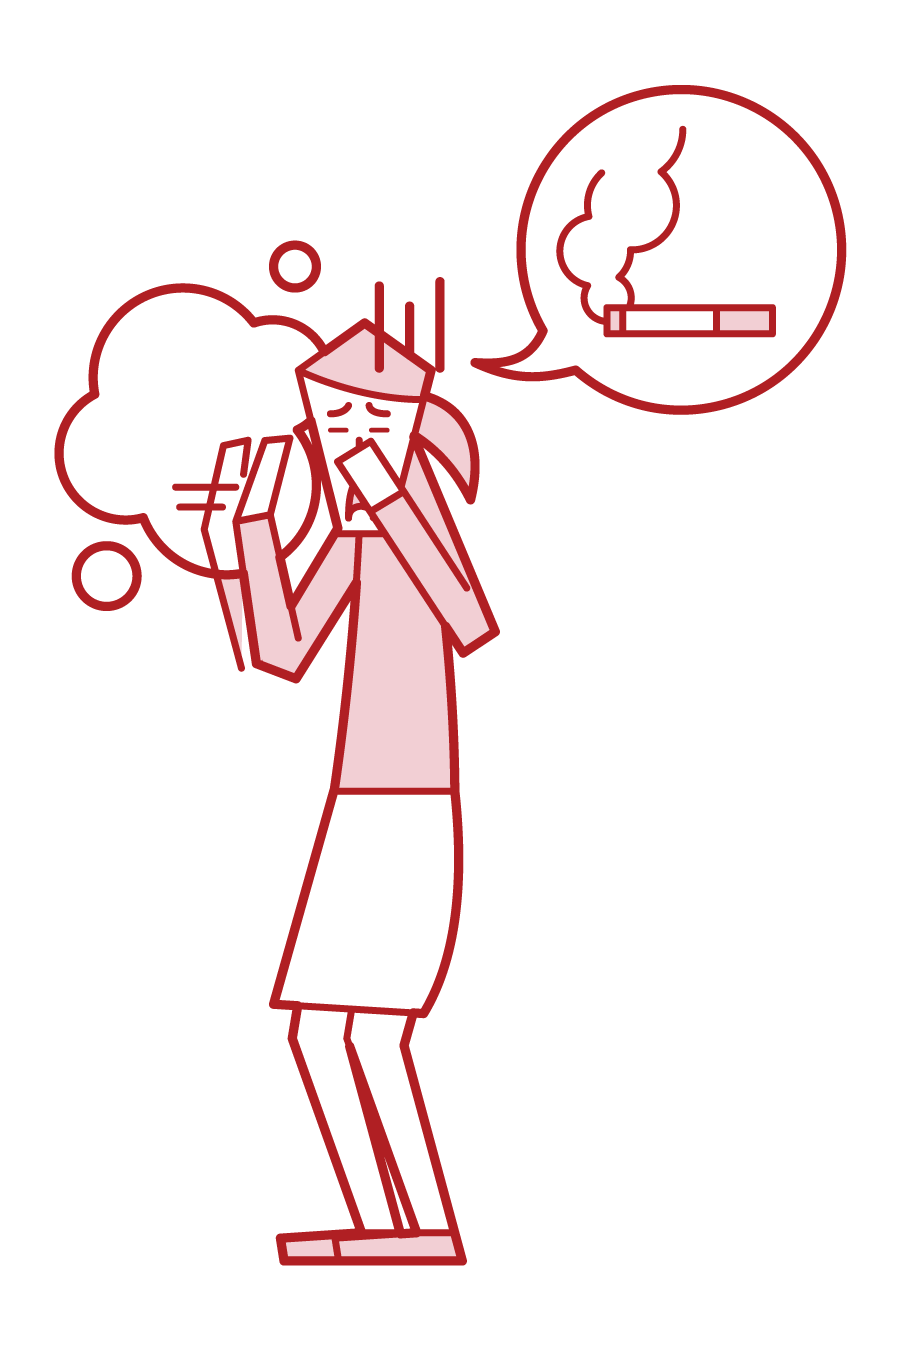 タバコの煙を嫌がる人 女性 のイラスト フリーイラスト素材 Kukukeke ククケケ